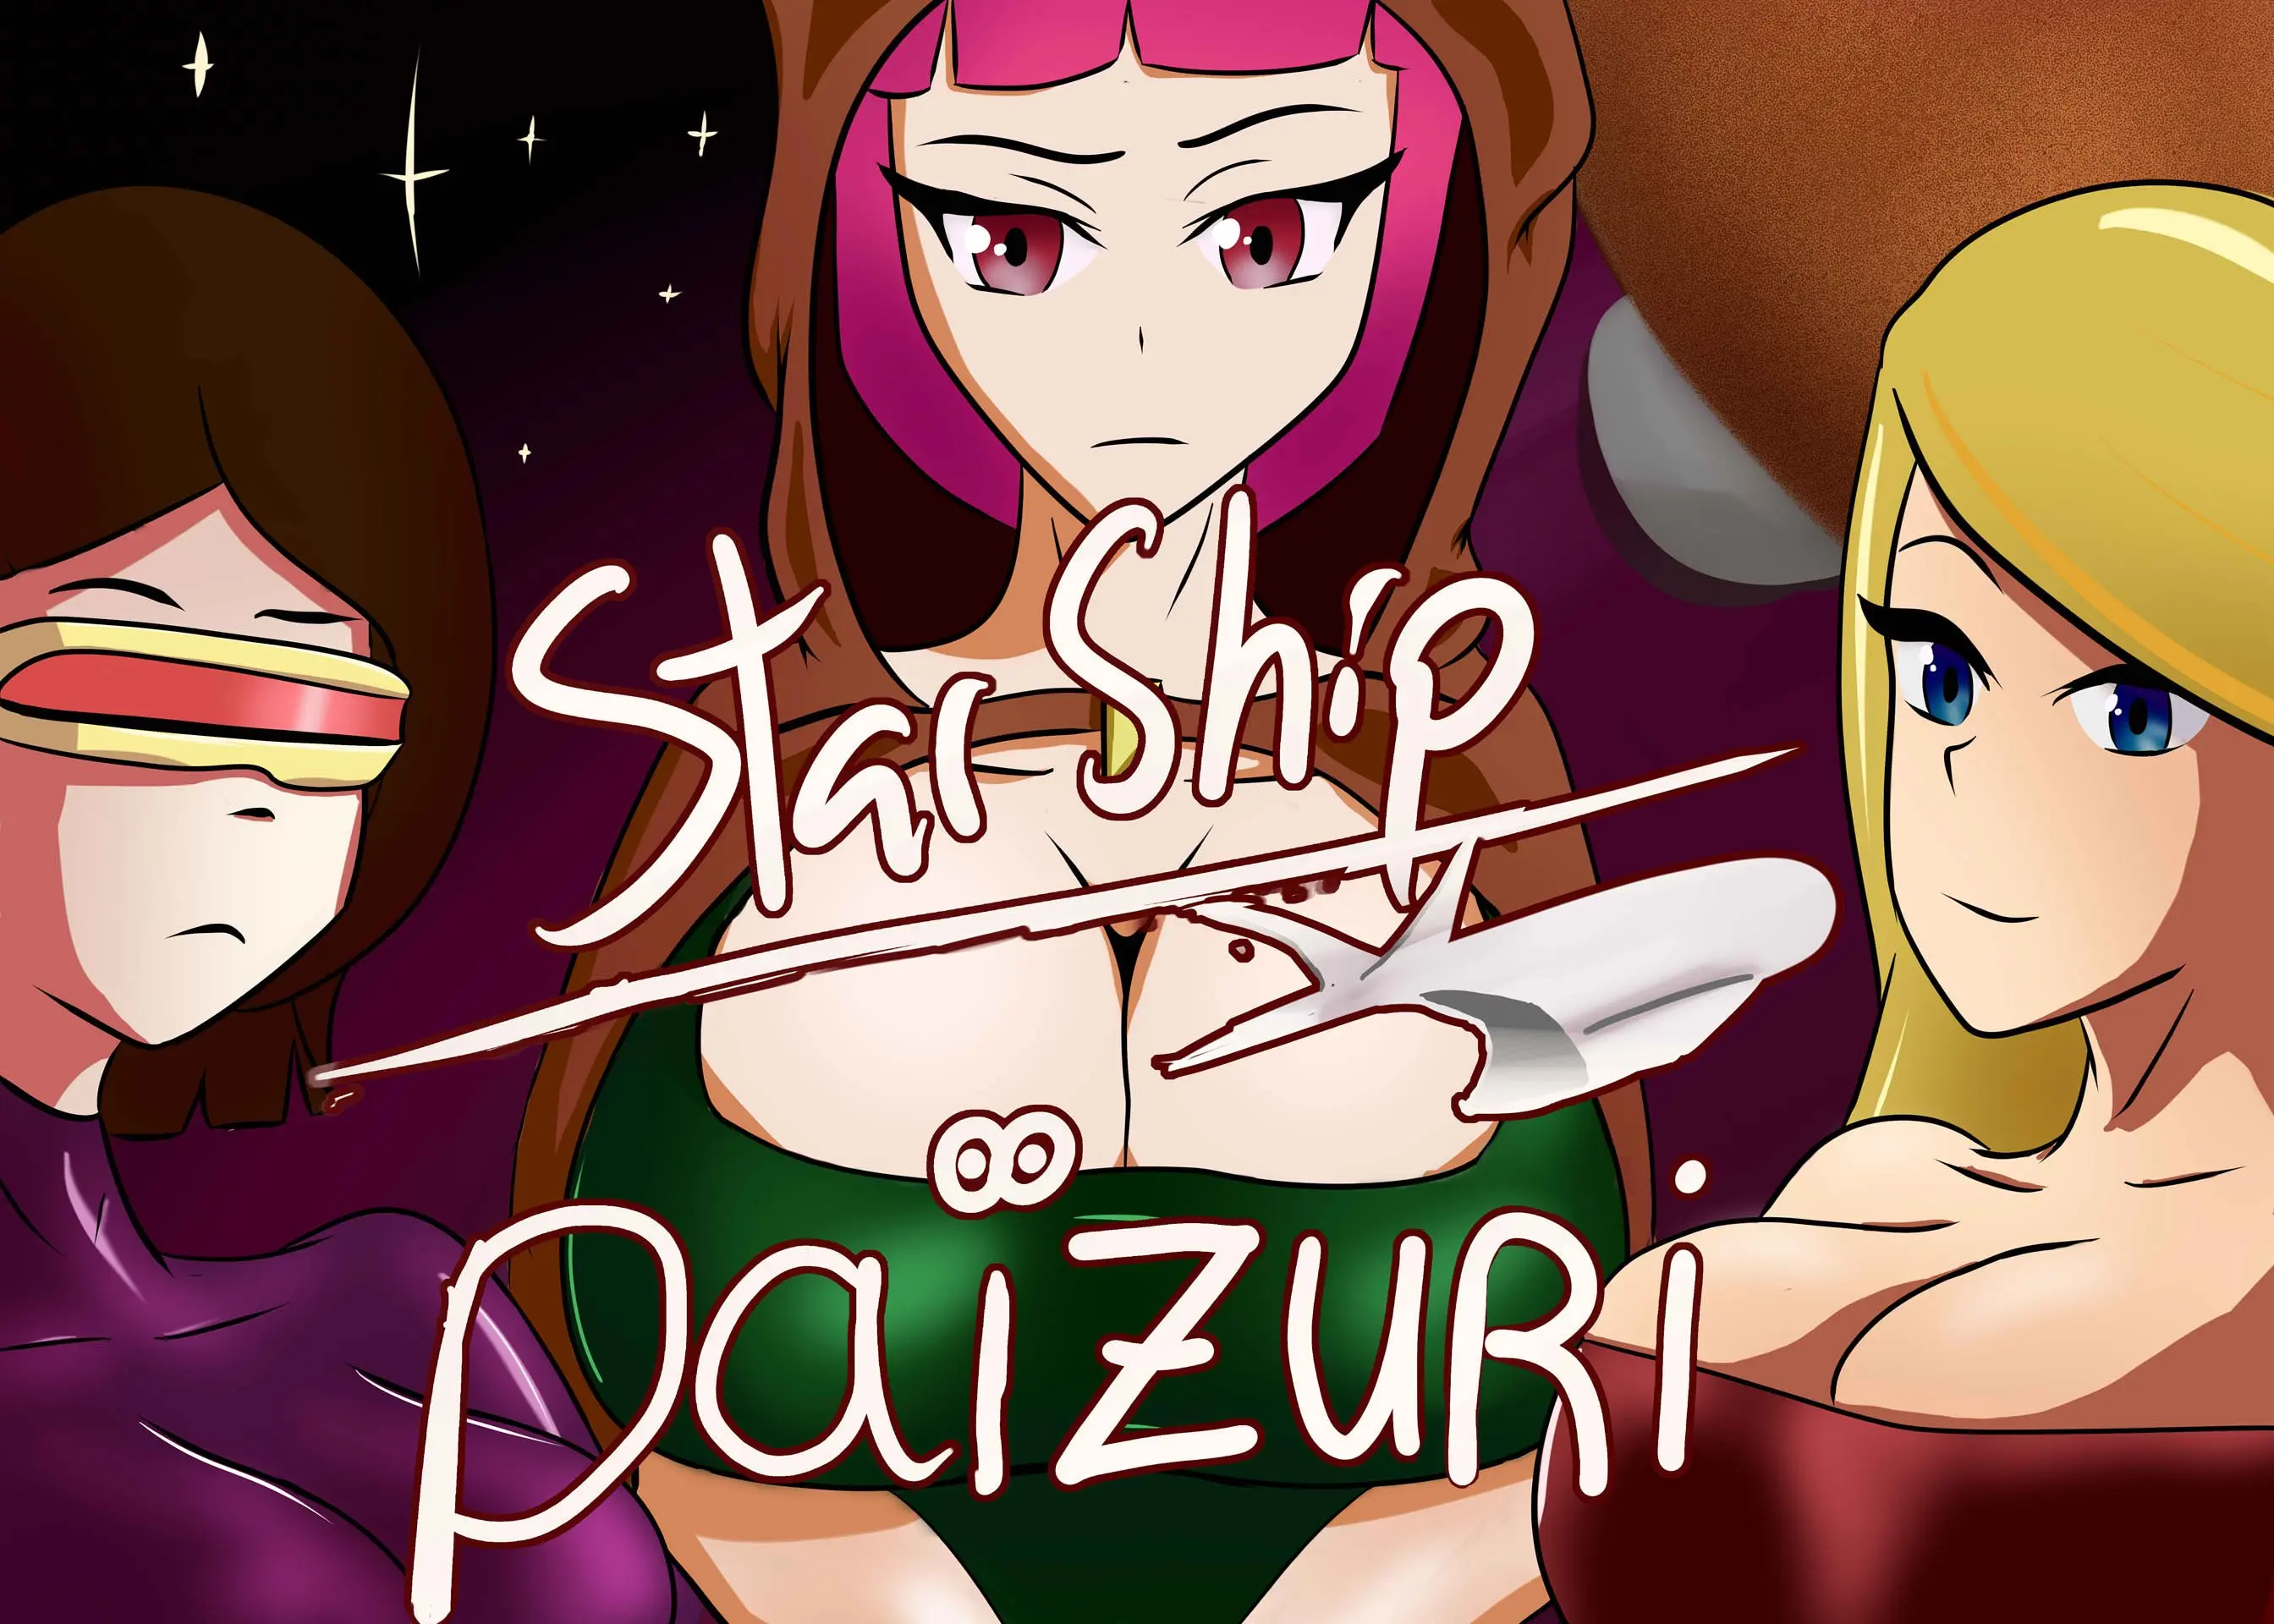 Starship Paizuri! [v0.1 Demo] main image